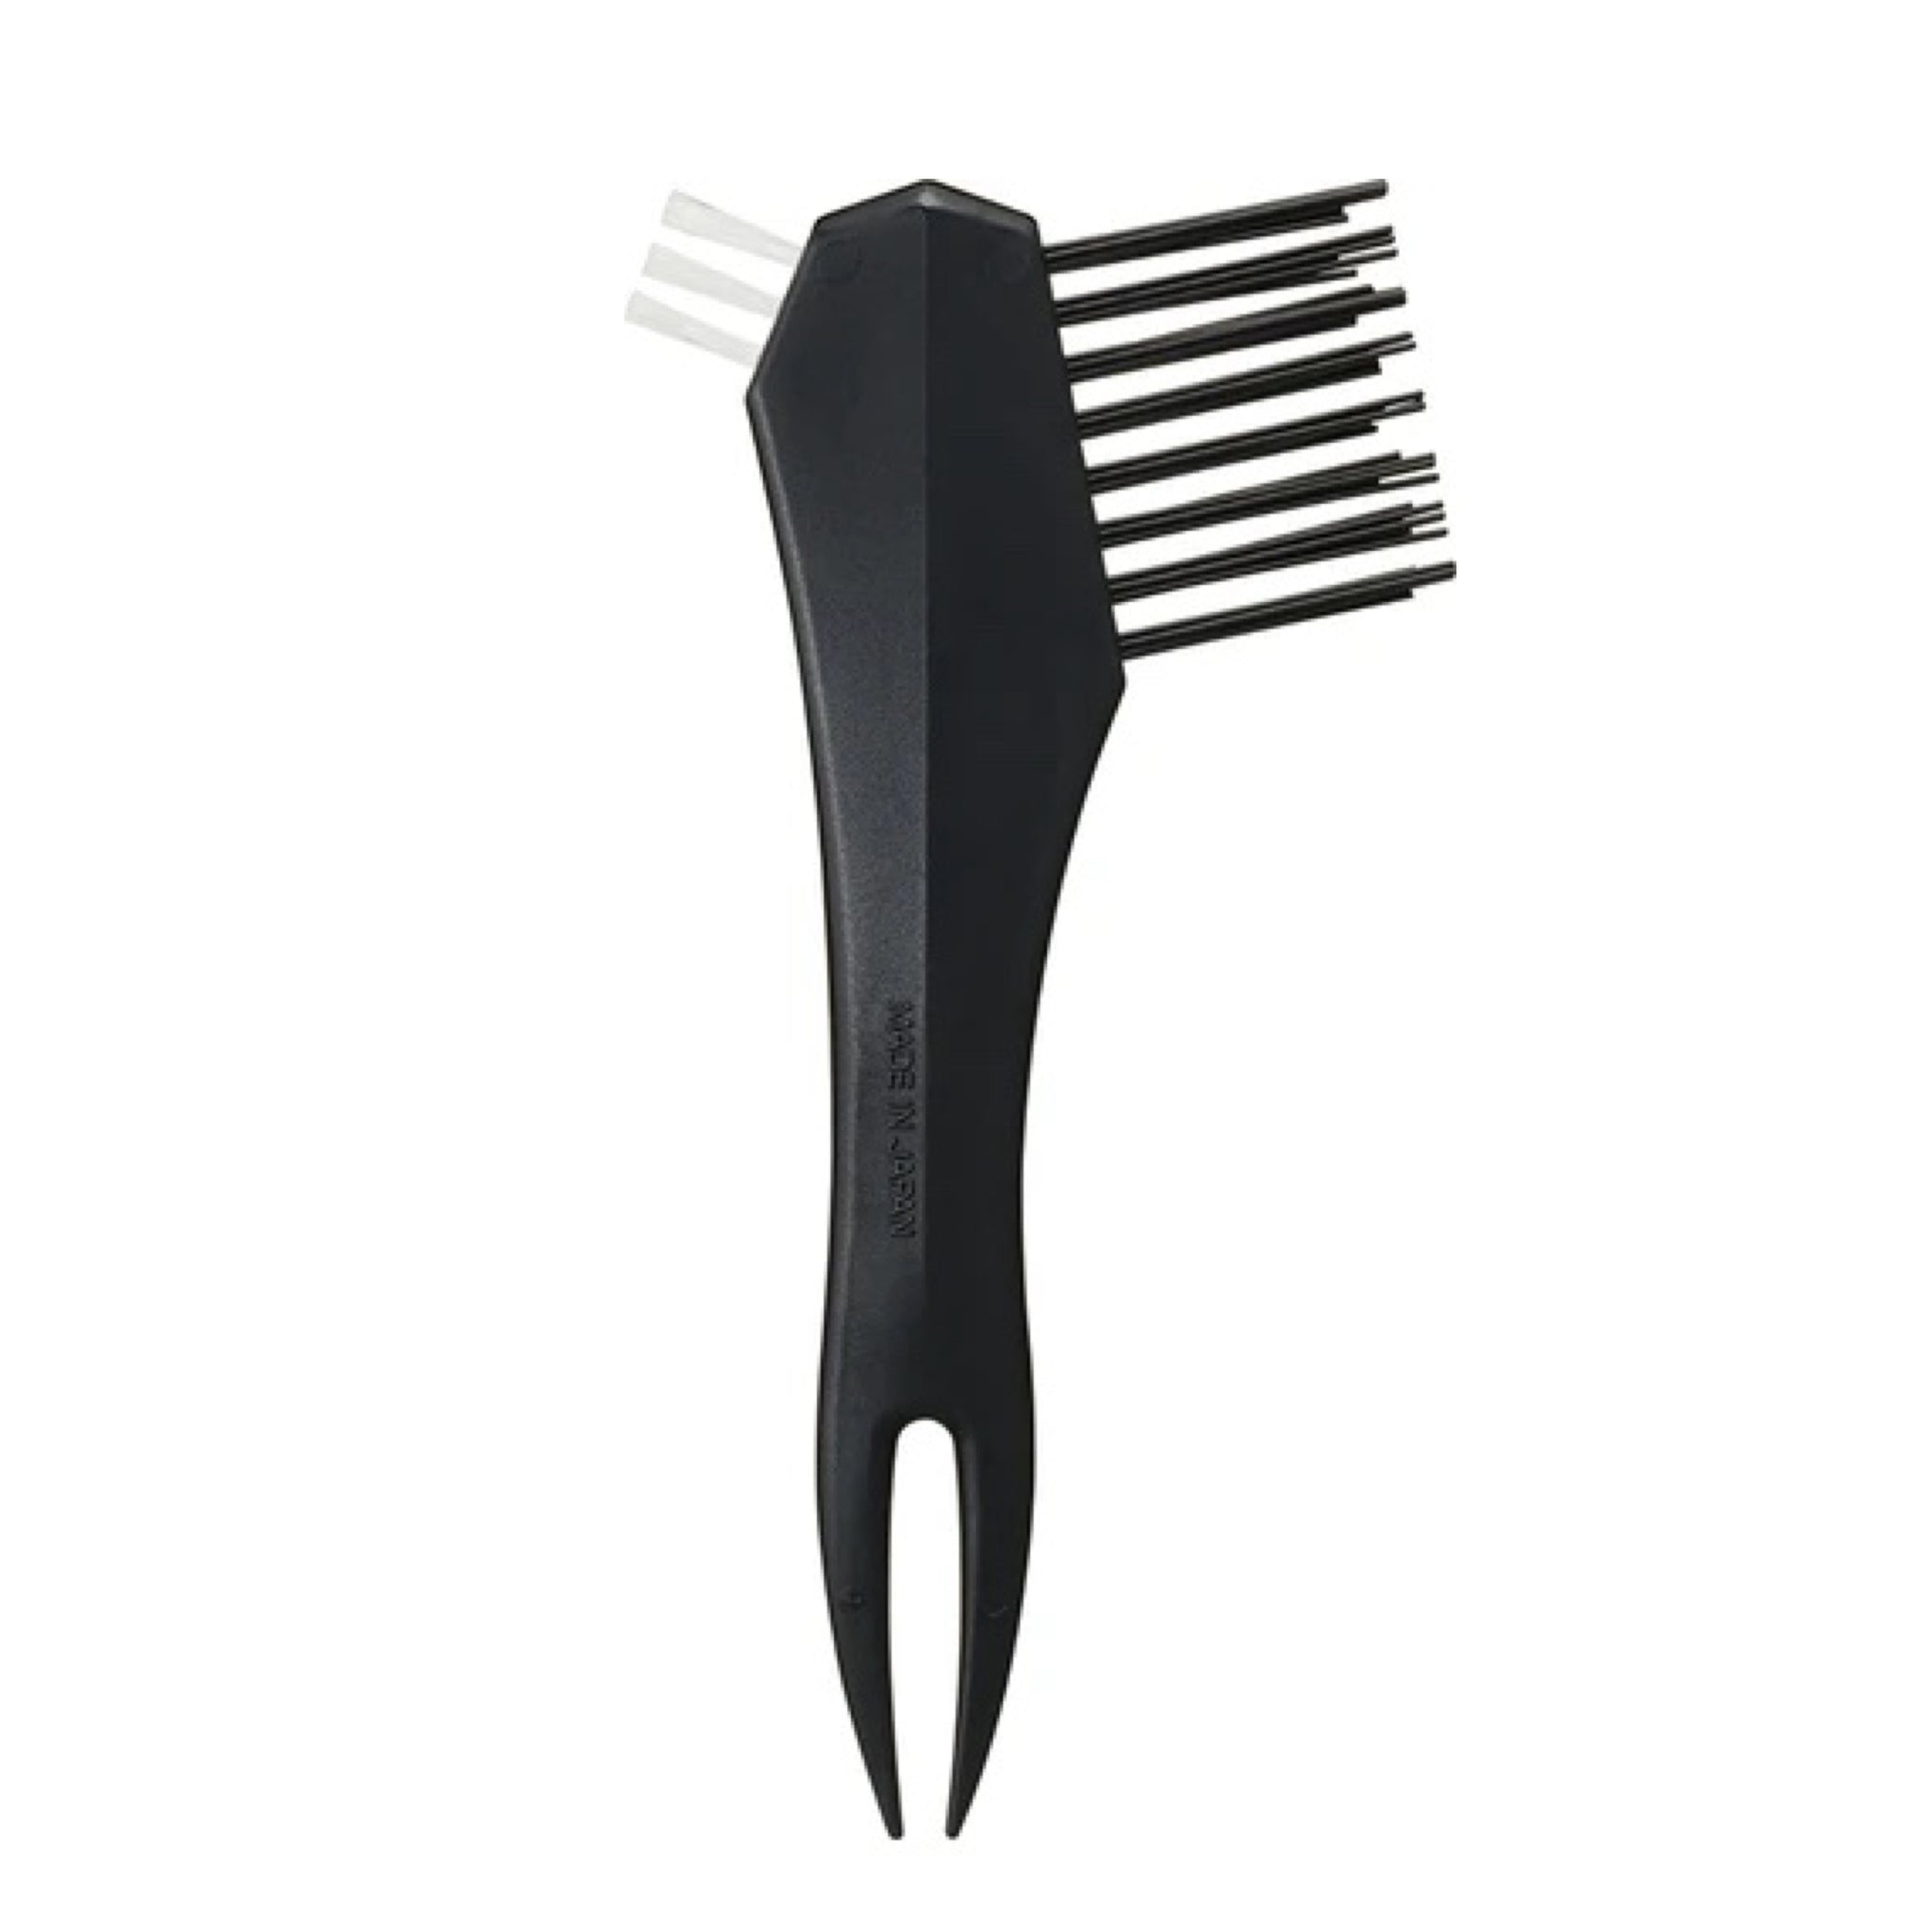 ✨好用小物✨日本Vess Hair Brush Cleaner Pro洗梳神器【全網現貨】